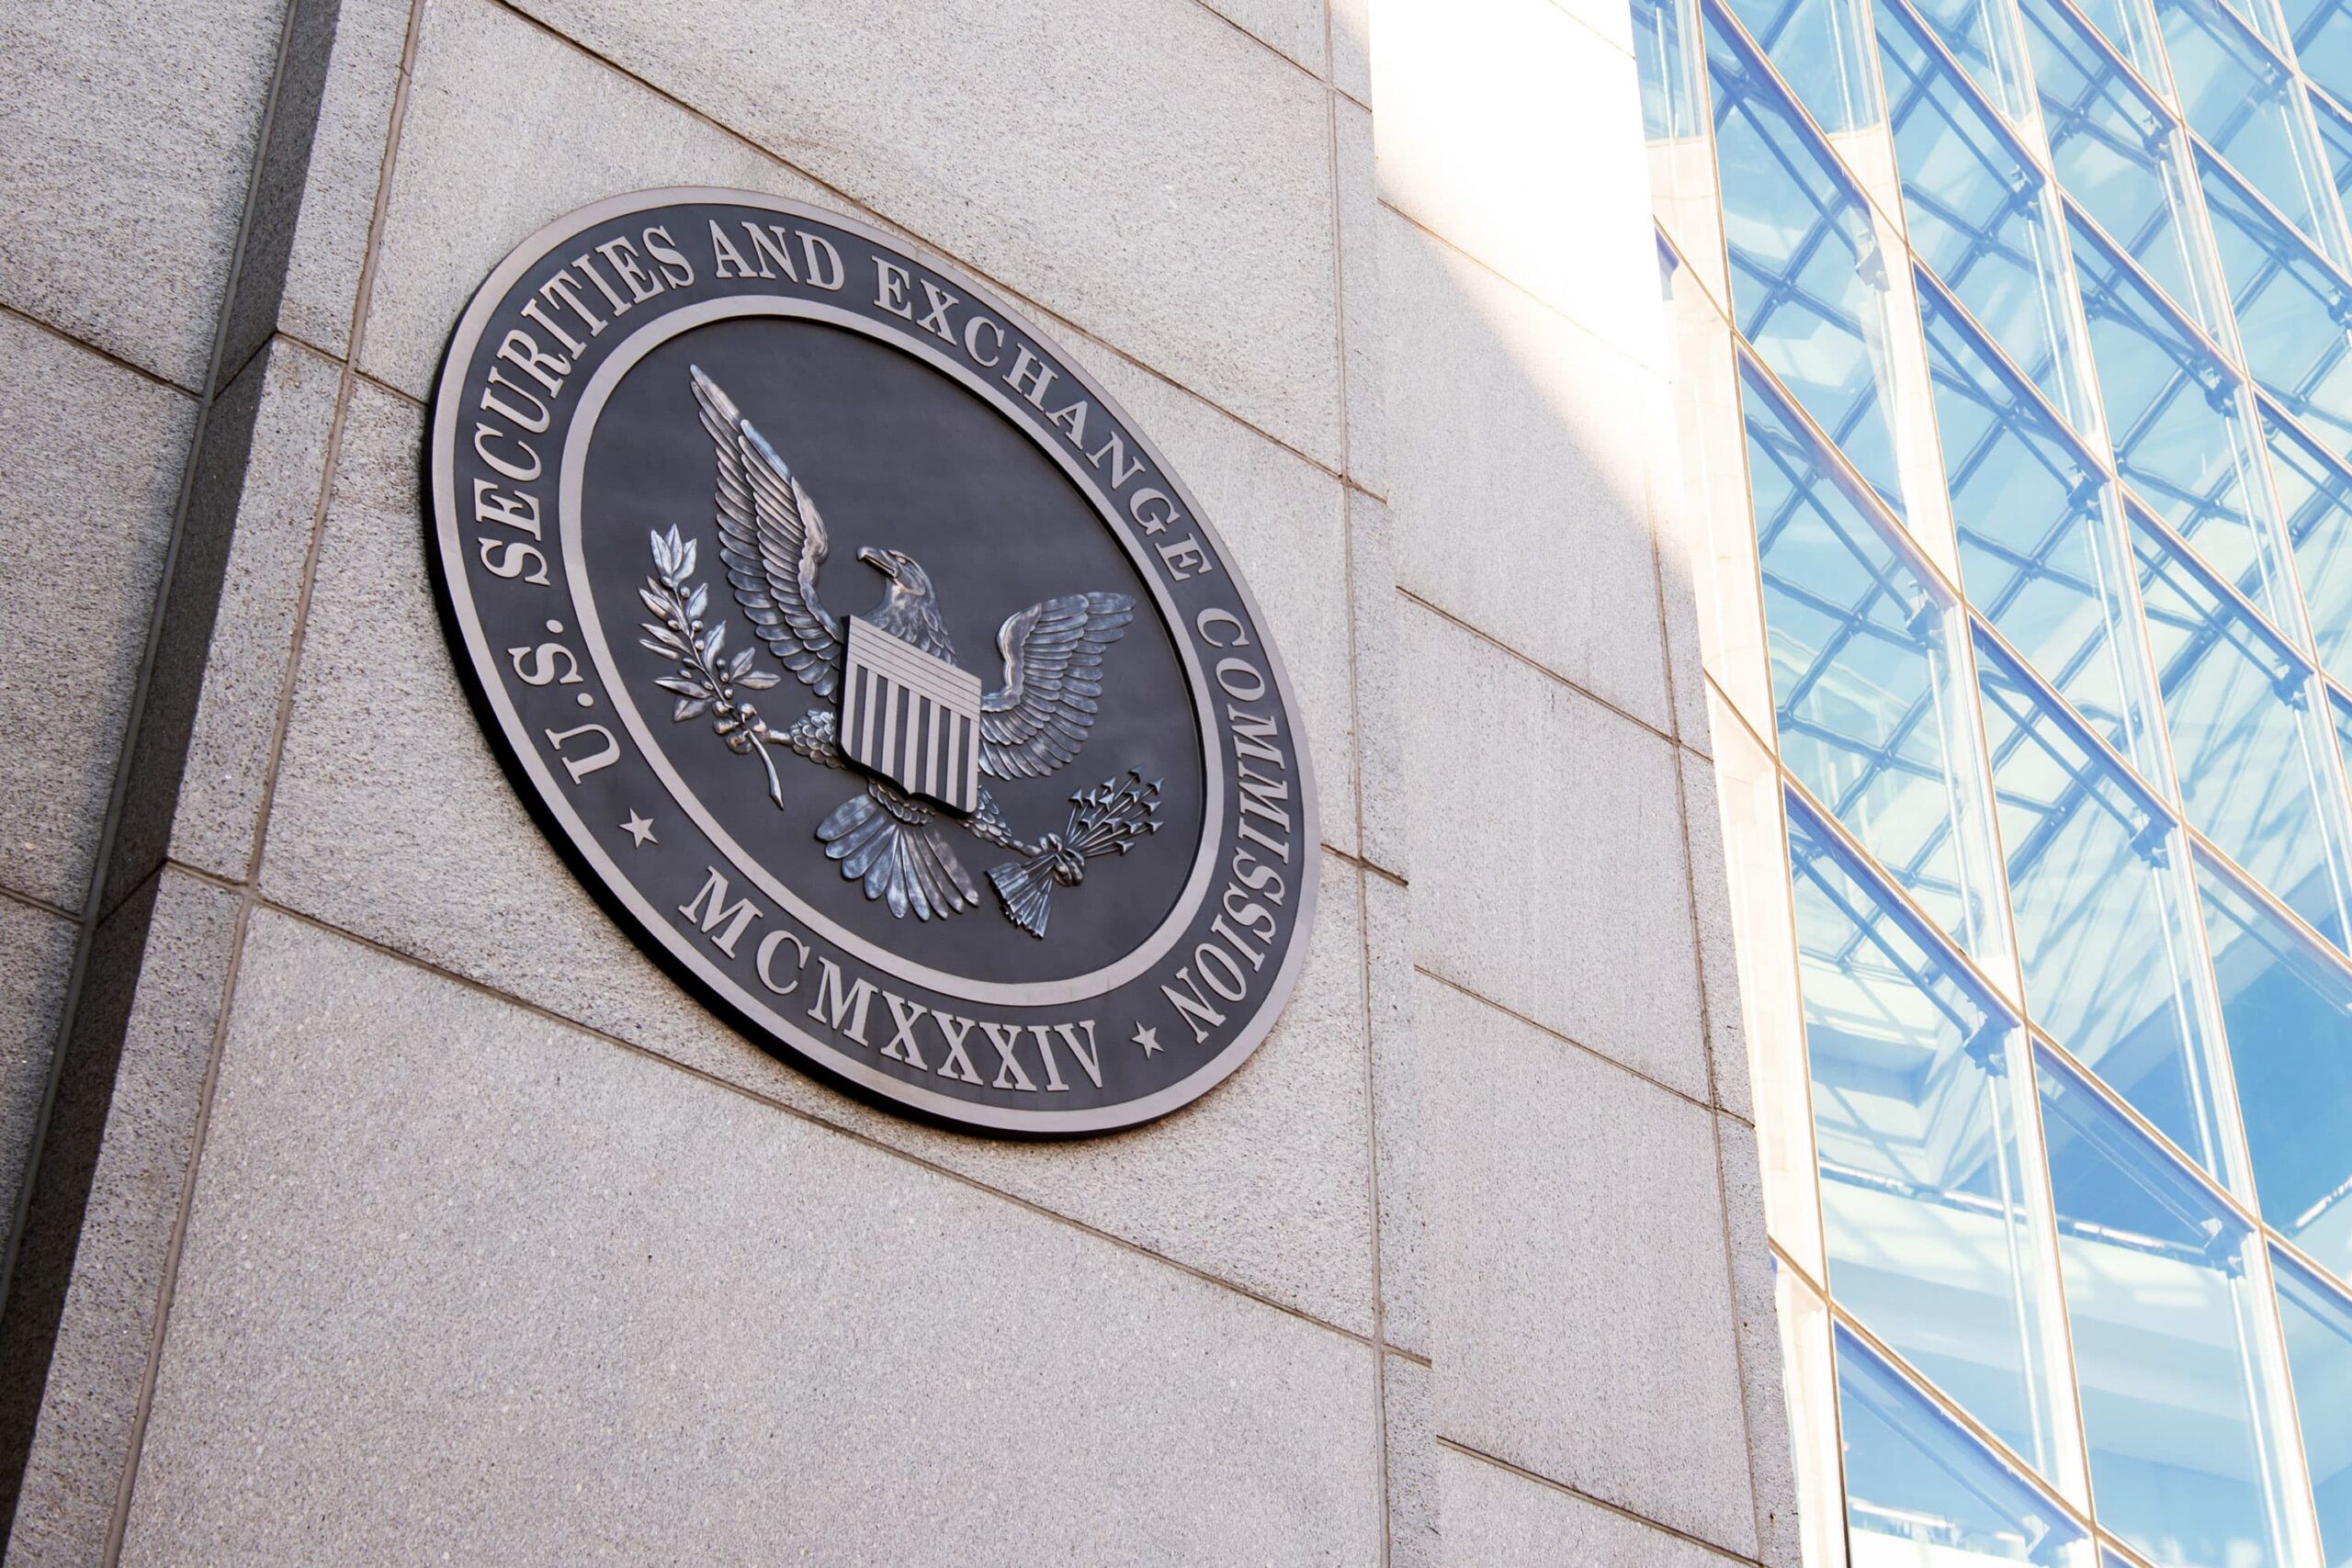 الهيئة الأمريكية للأوراق المالية والبورصات (SEC) تفرض غرامات على 16 وسيطًا ومستشارًا استثماريًا بسبب انتهاكات في الاتصالات غير الرسمية